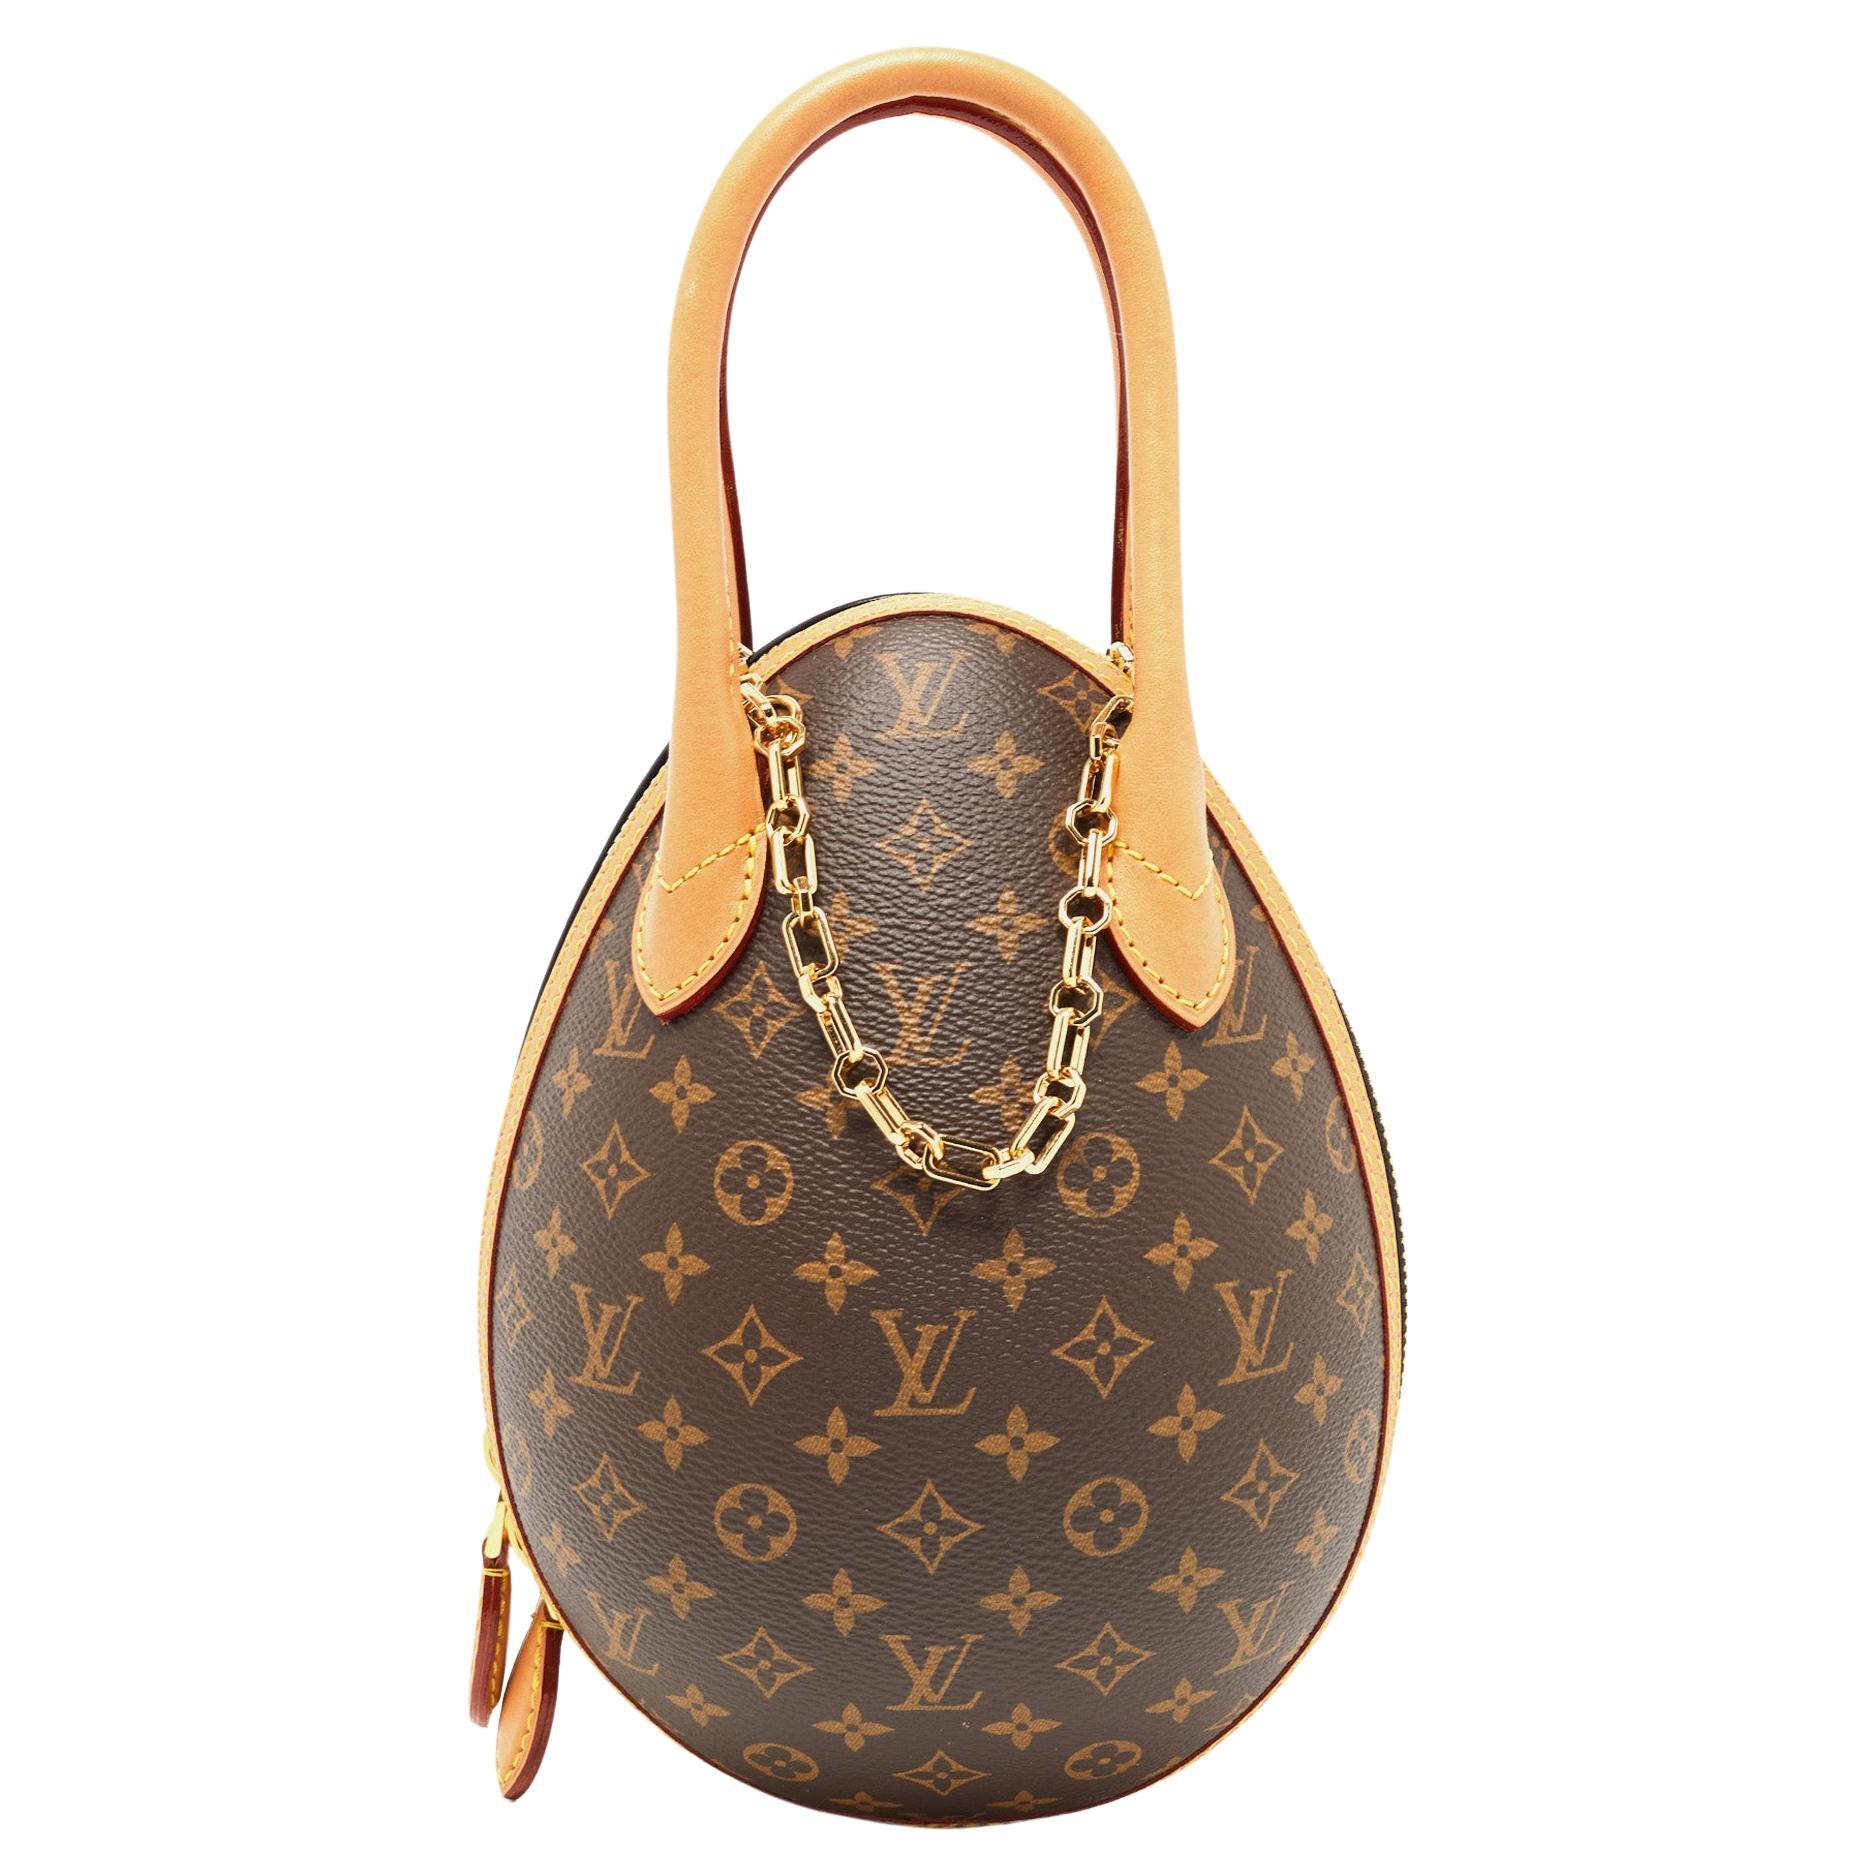 Authentic Louis Vuitton Bags Uk